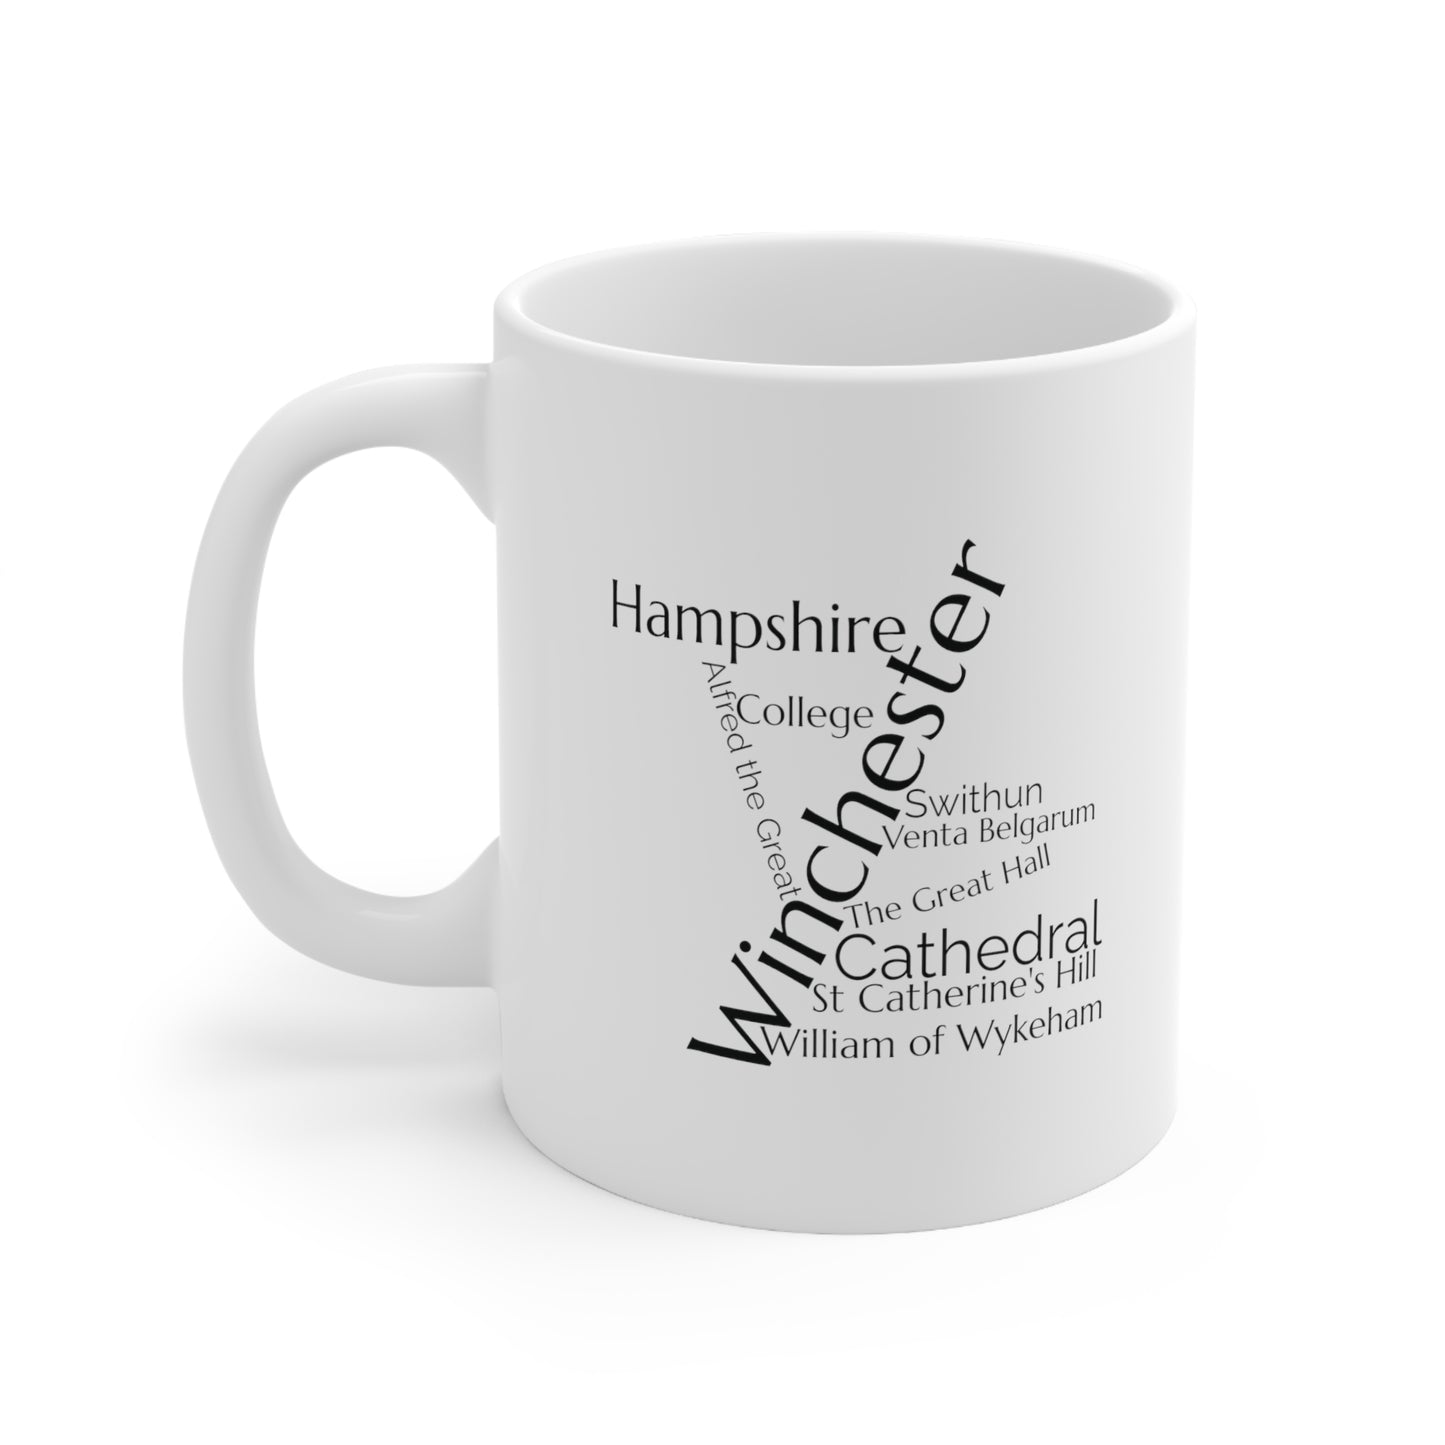 Winchester word mug, local mug, geography mug, gift, mug, coffee cup, word mug, wordcloud mug, christmas gift, birthday gift